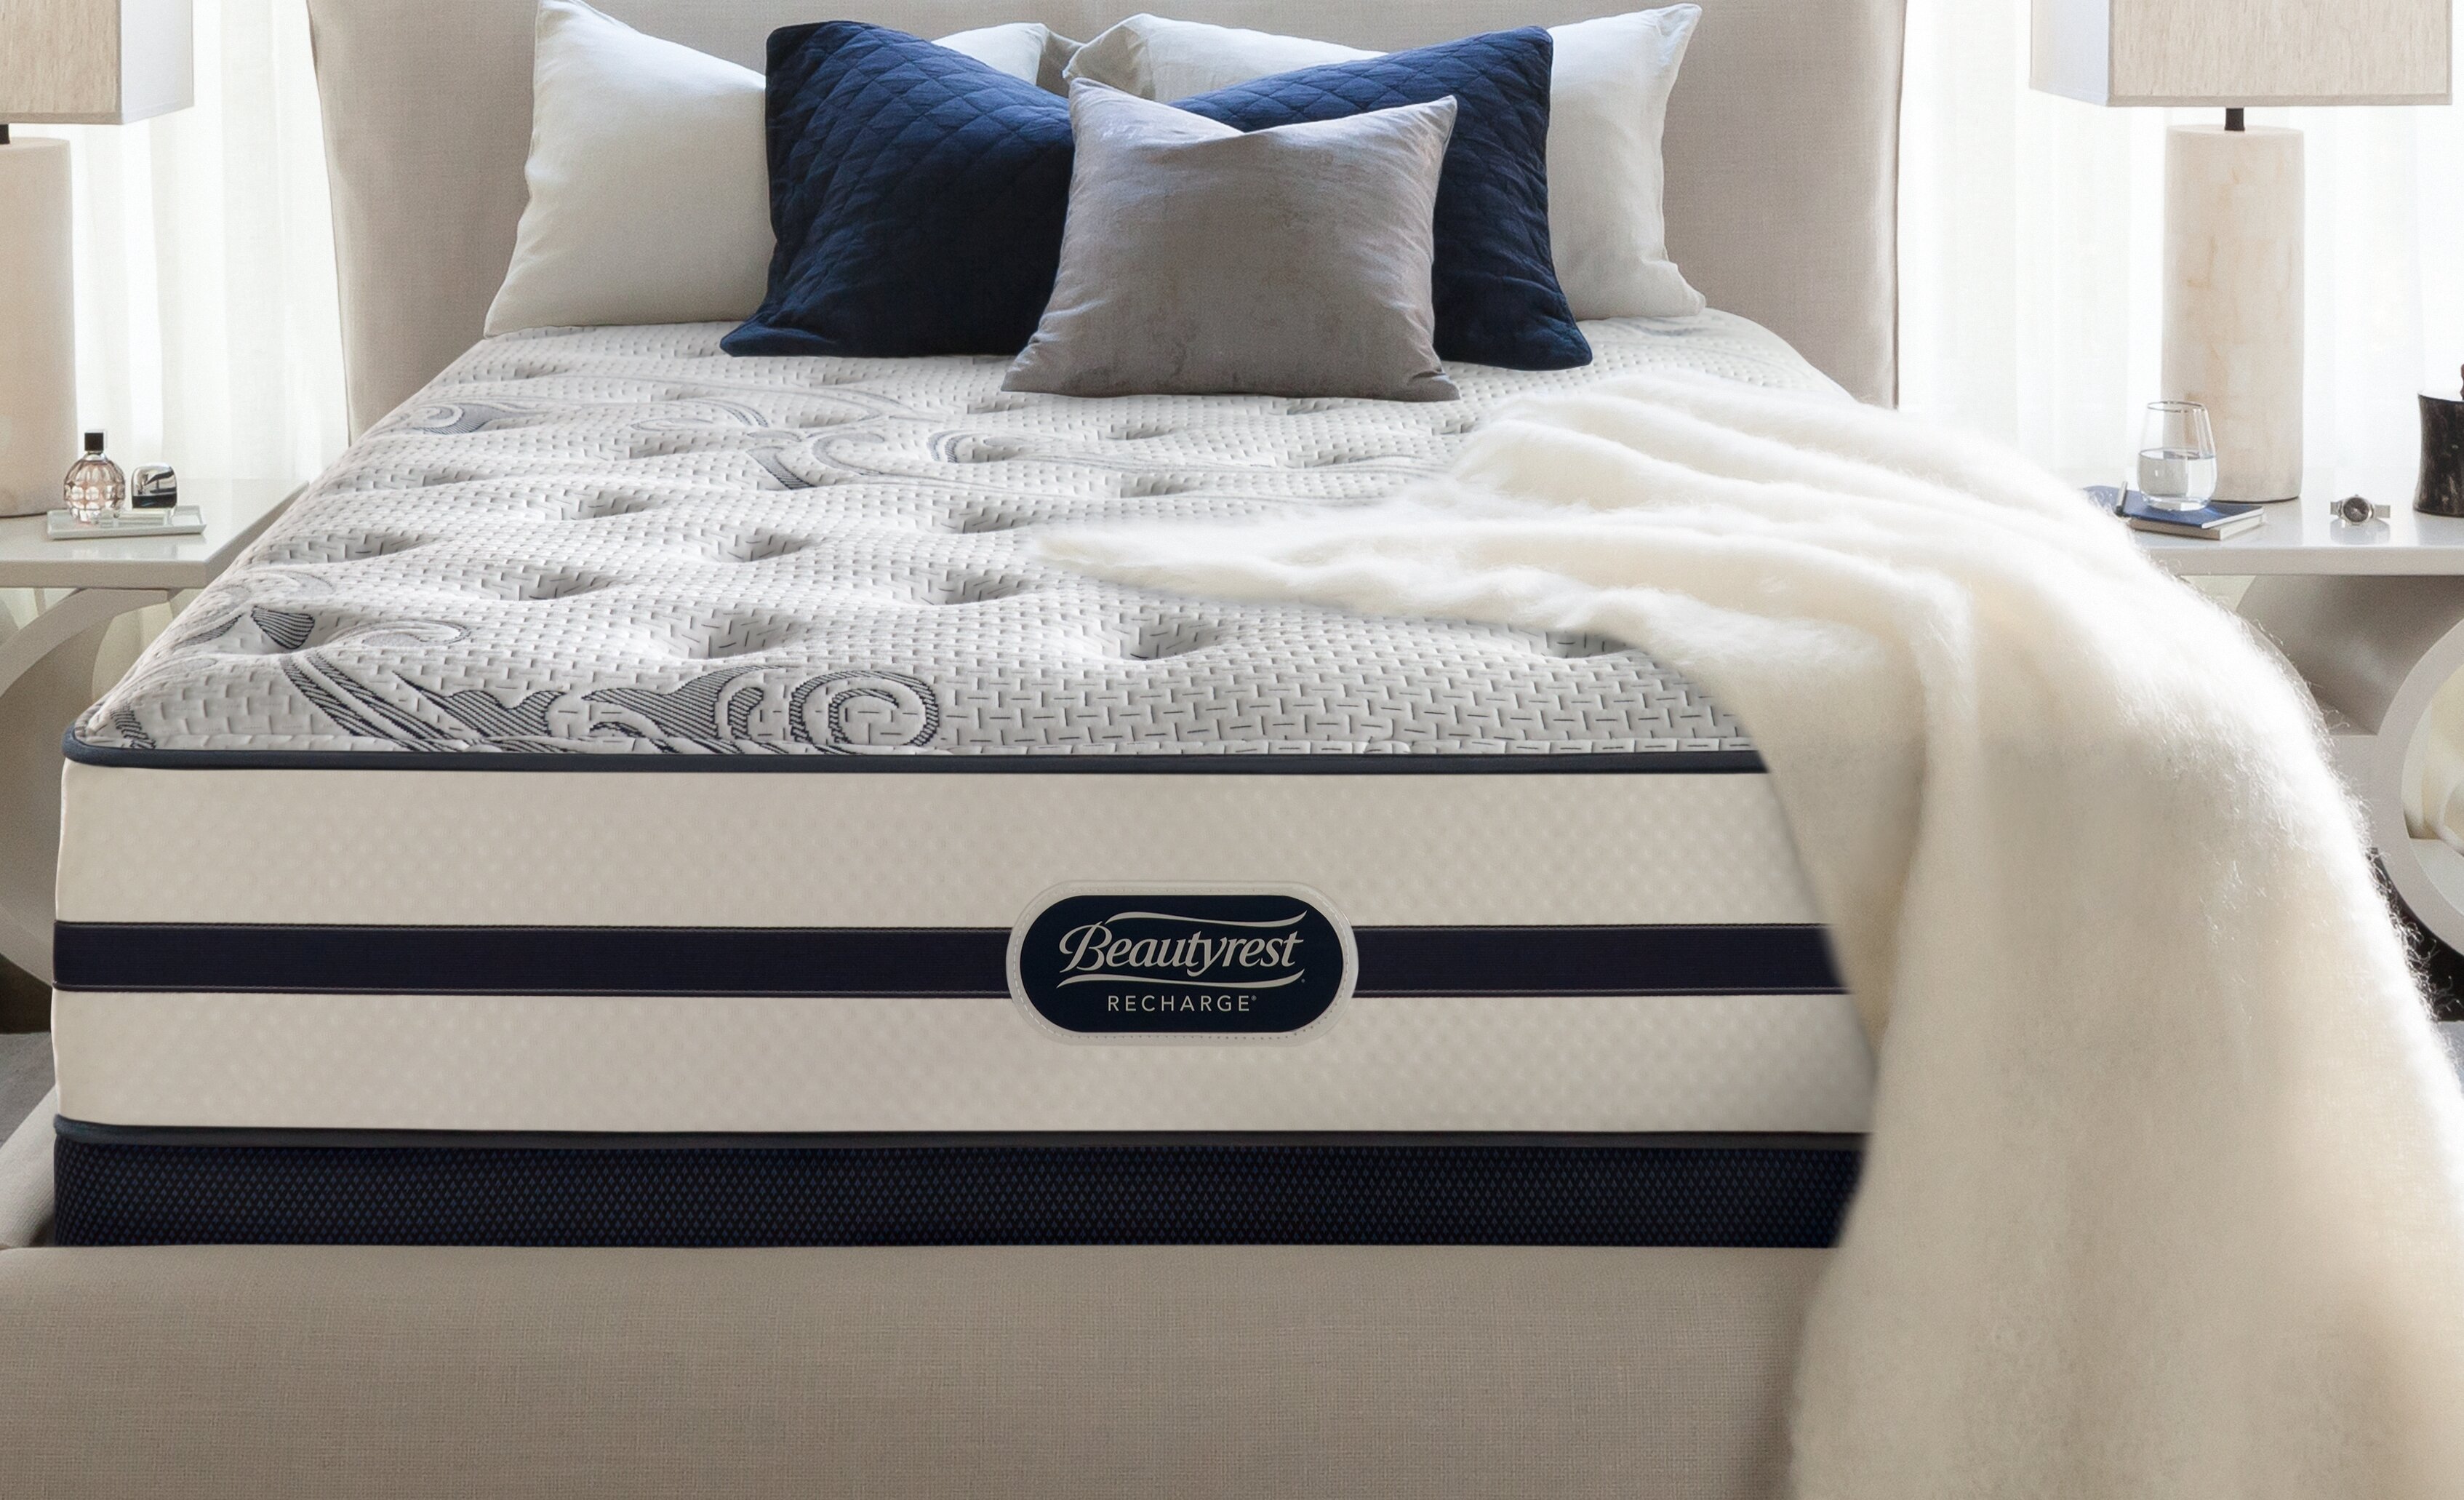 beautyrest recharge mona mattress reviews